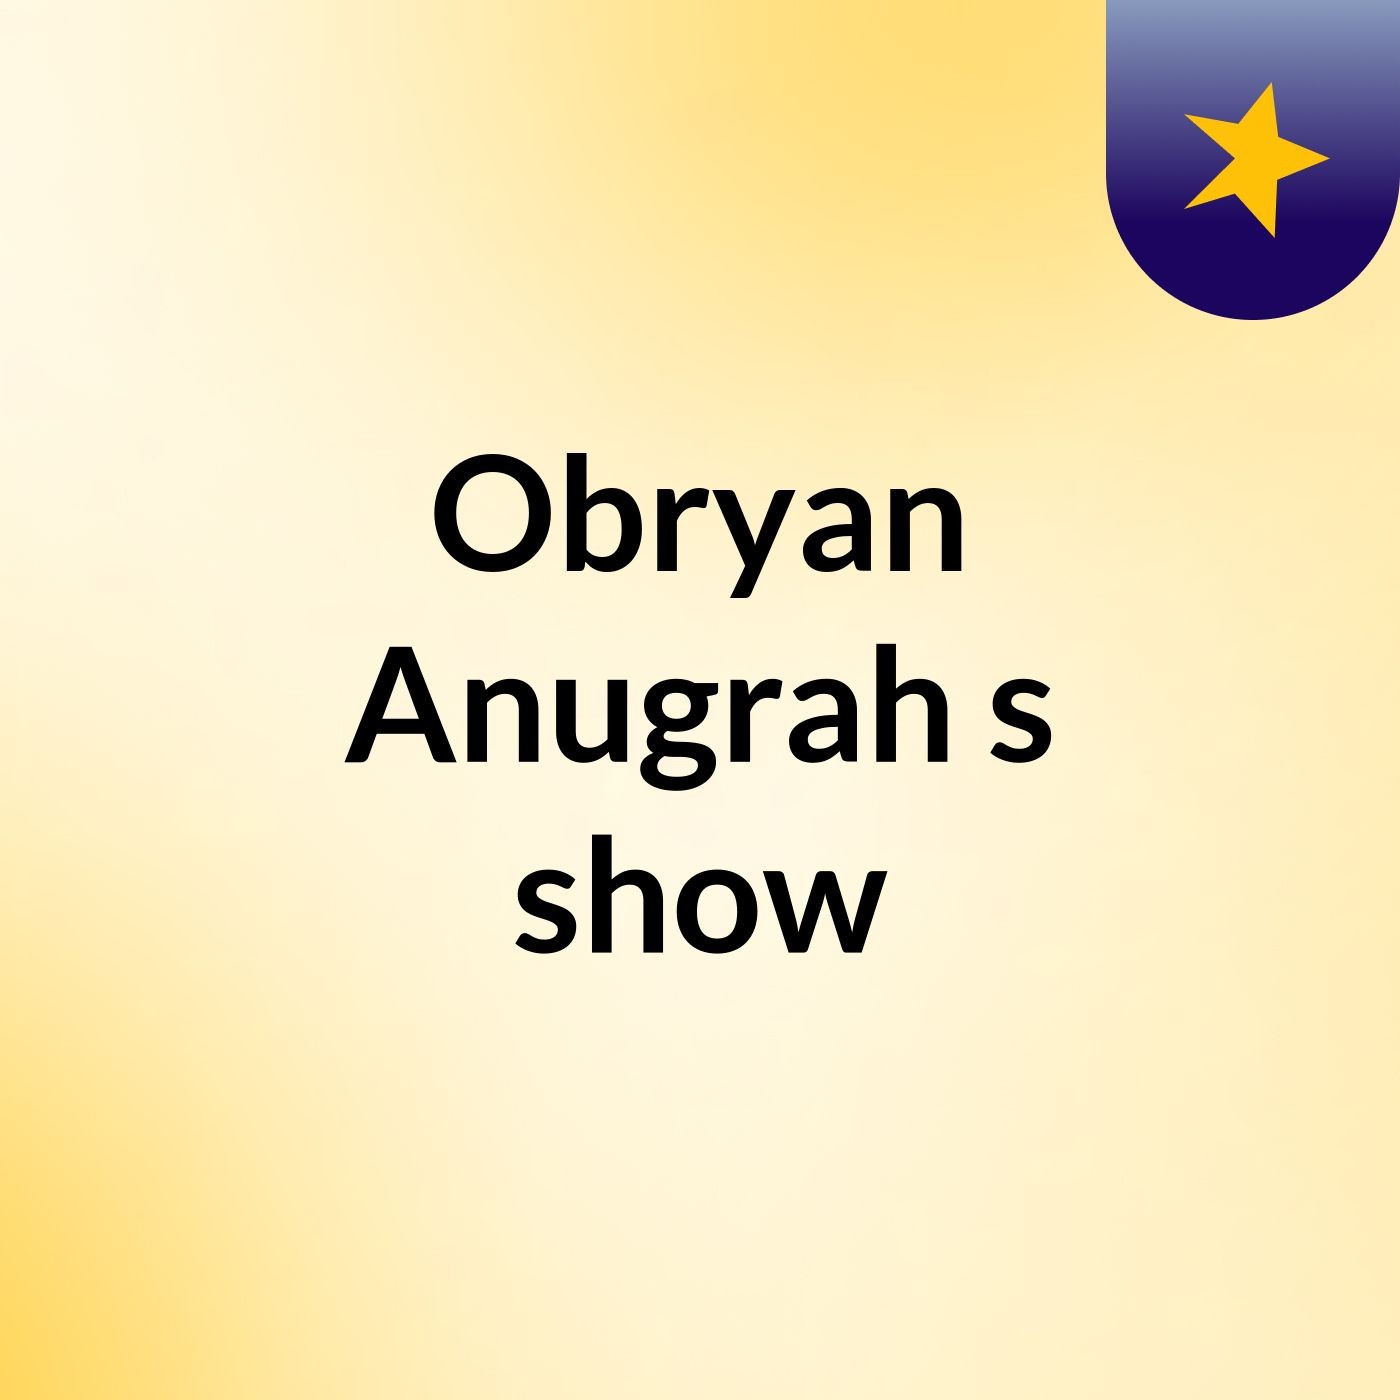 Obryan Anugrah's show